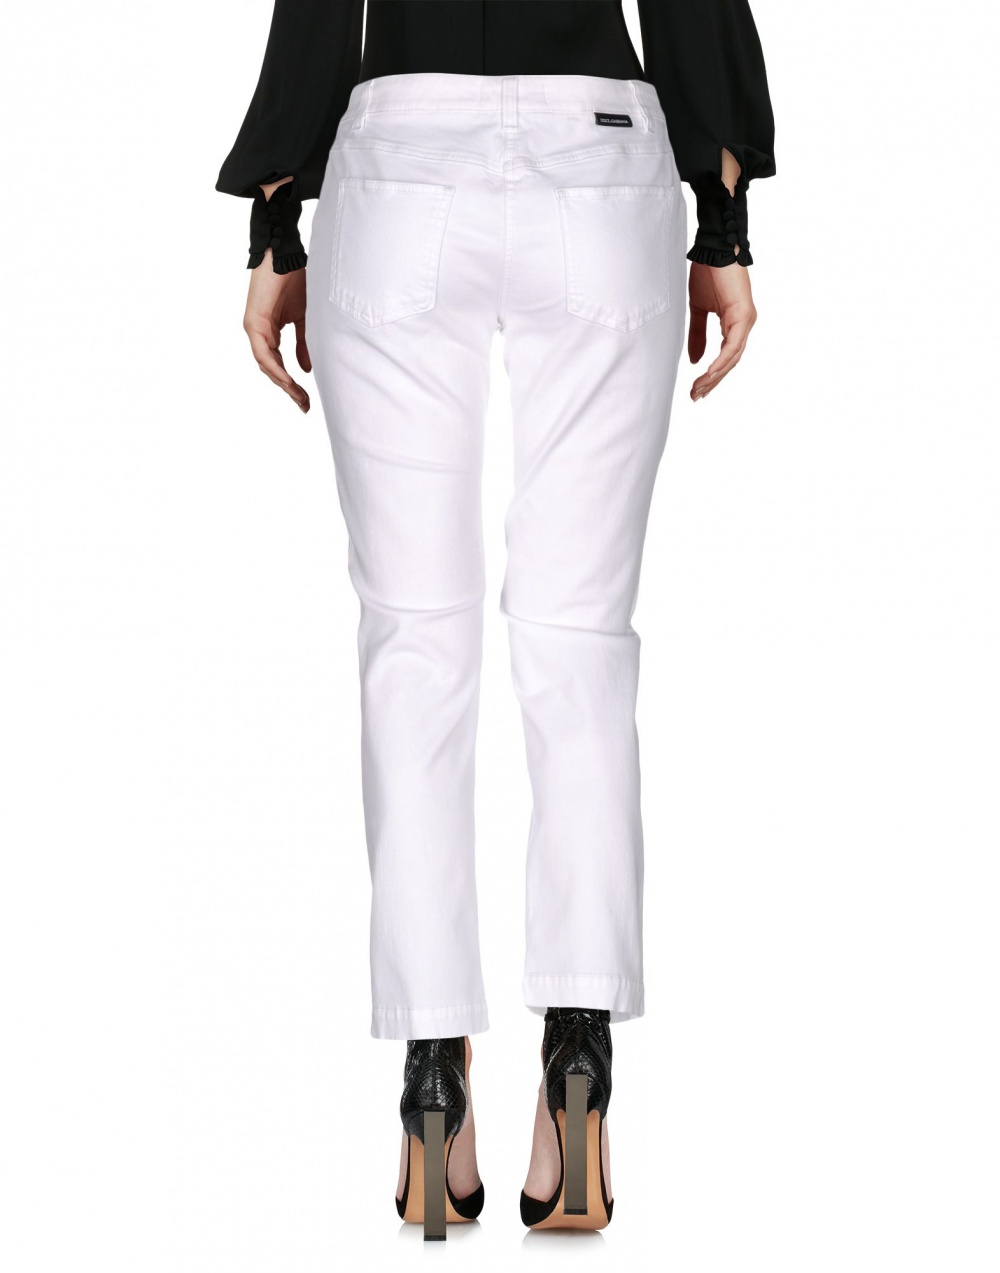 Укороченные джинсы DOLCE & GABBANA, 46 (Российский размер) дизайнер:44 (IT) Белый